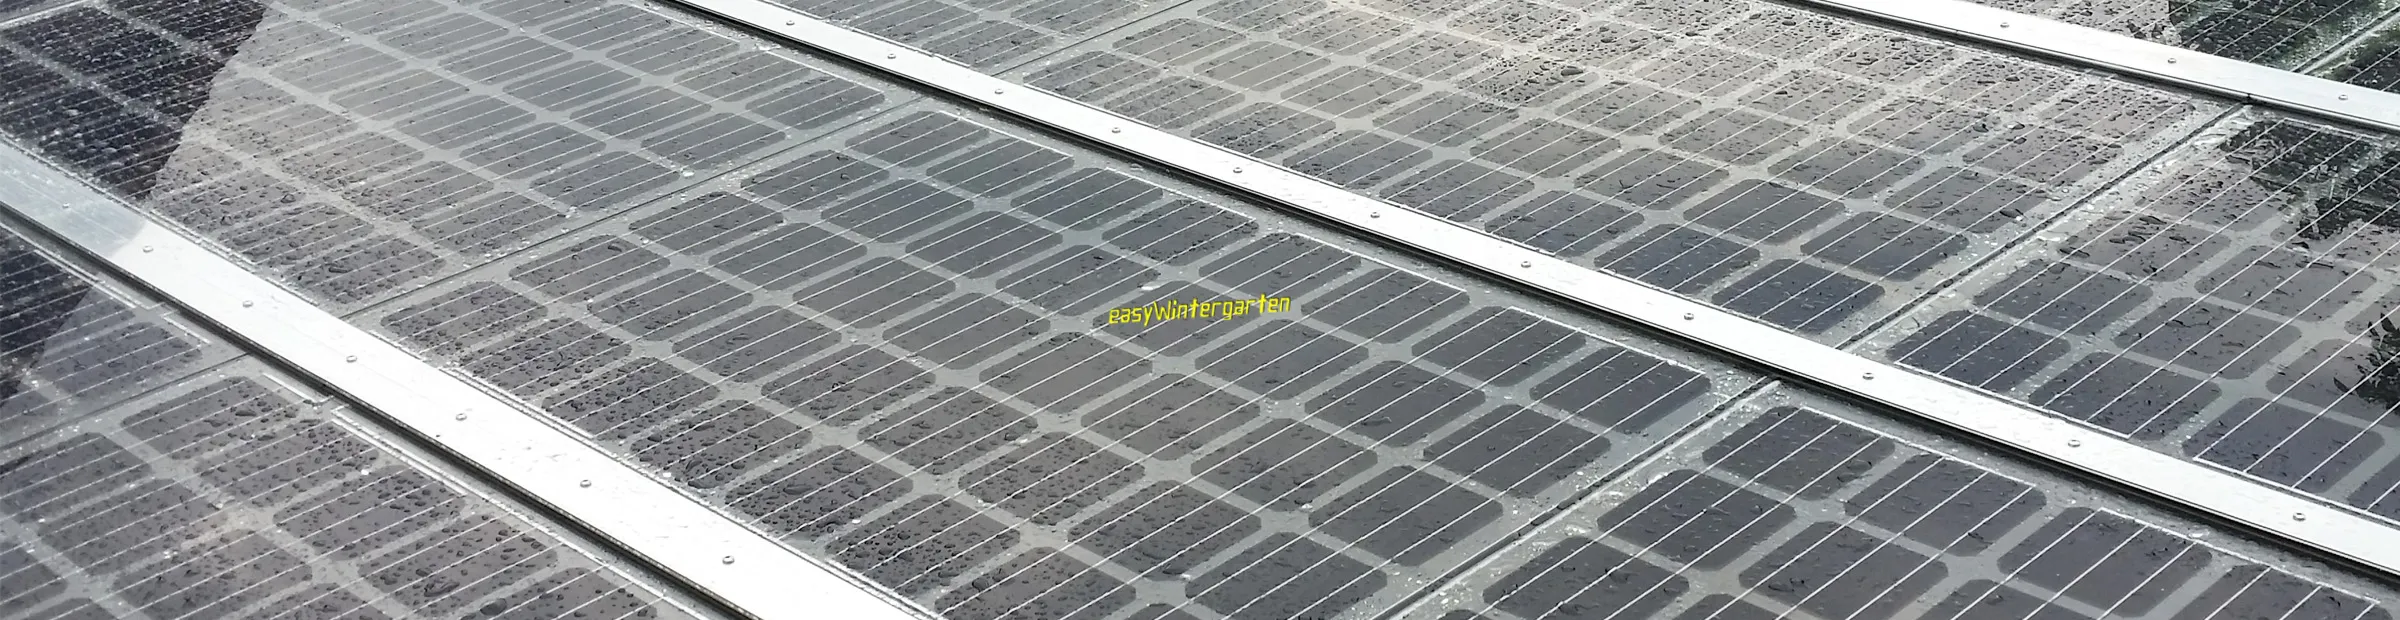 Flaches Solardach ohne dass Wasser stehen bleibt